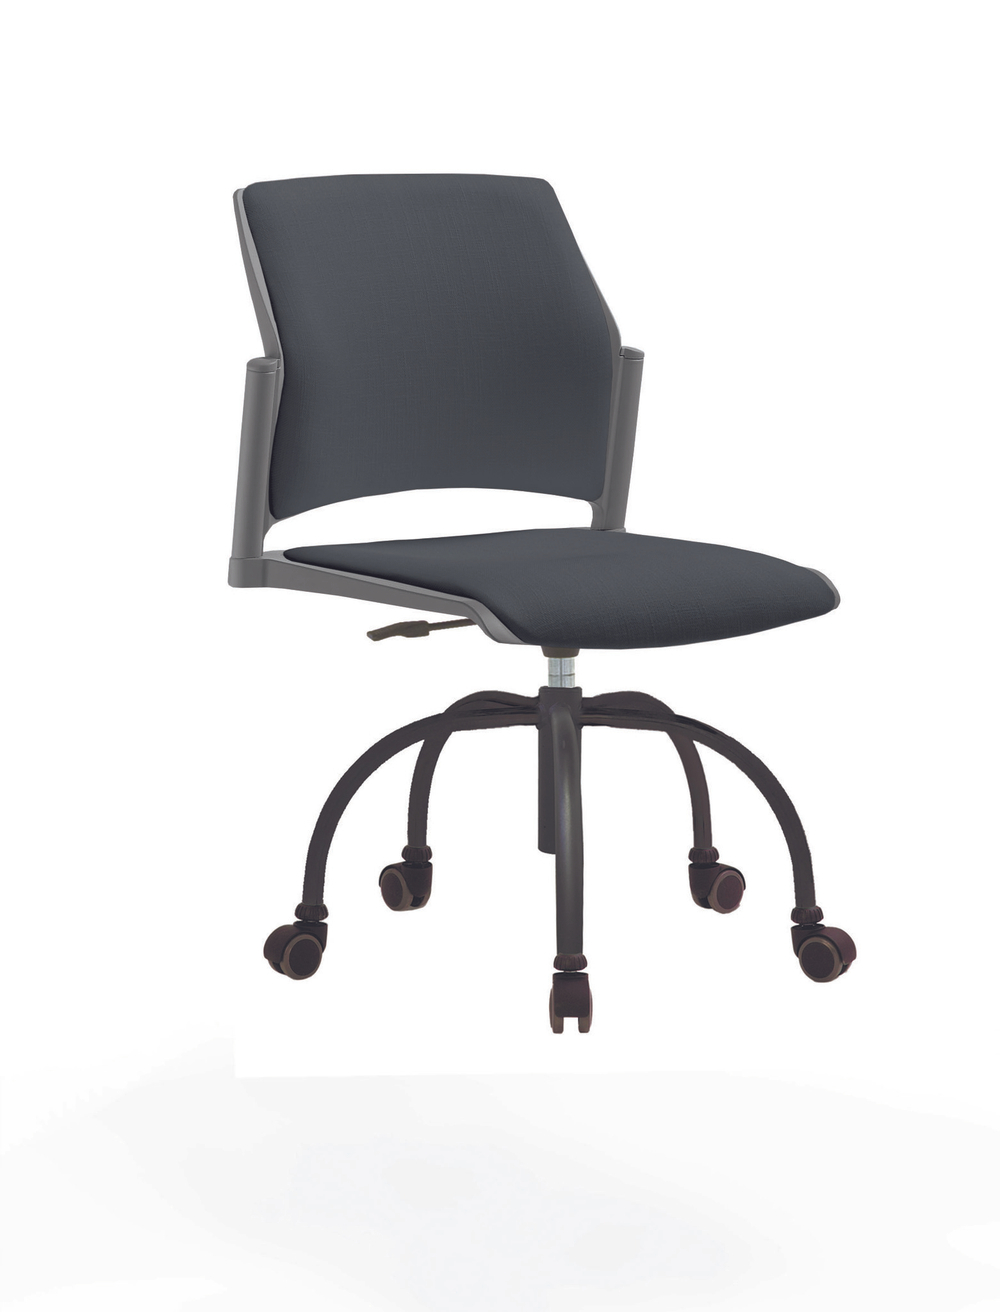 Кресло Rewind каркас черный, пластик серый, база паук краска черная, без подлокотников, сиденье и спинка антрацит